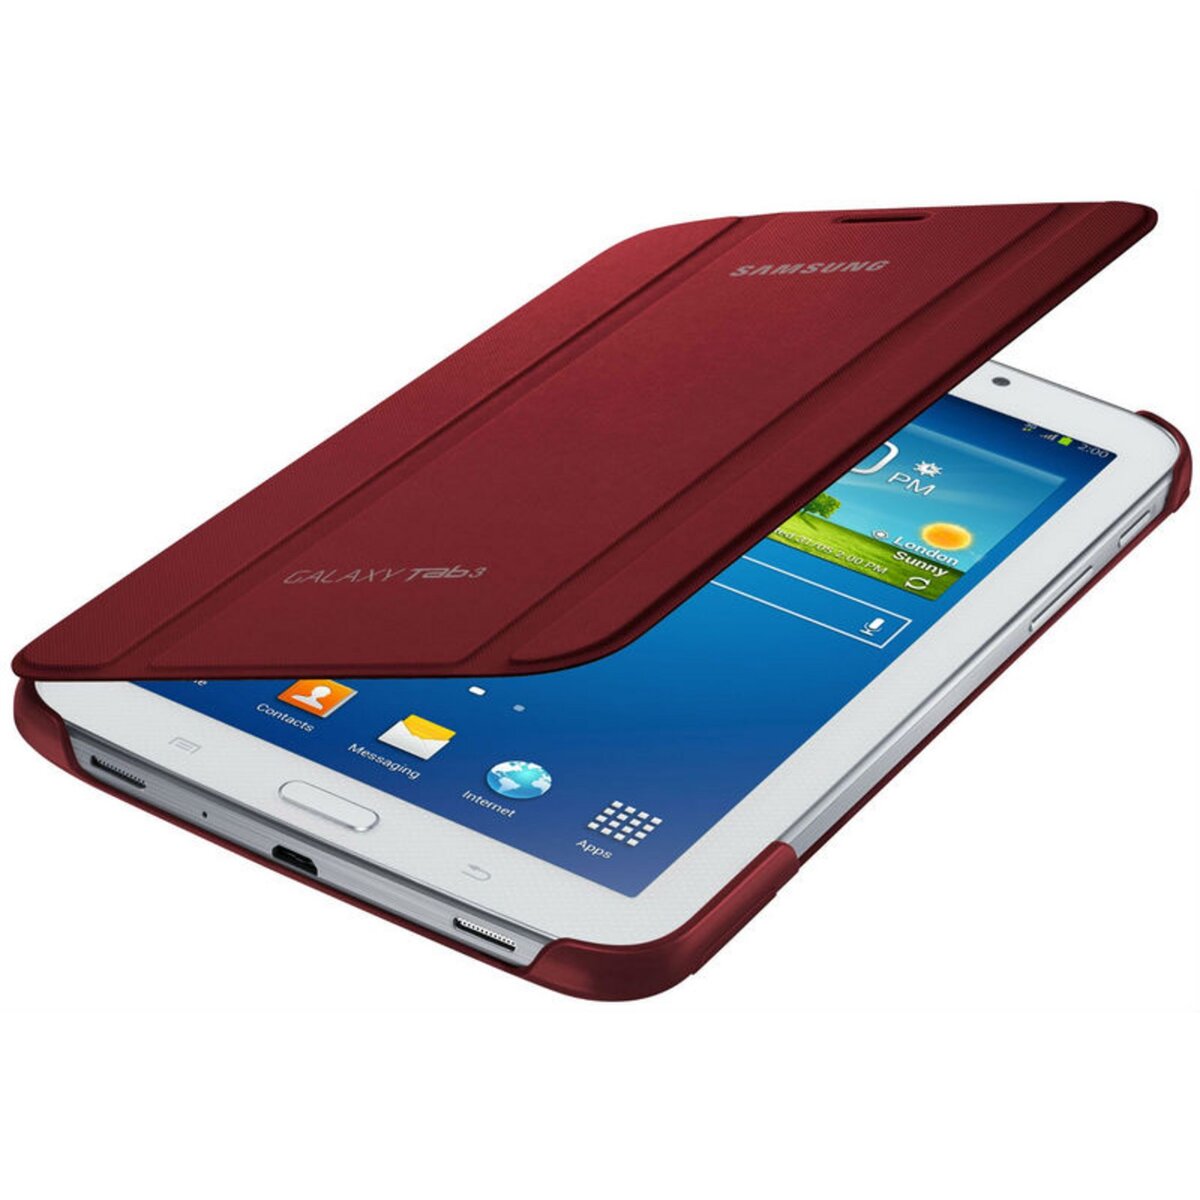 SAMSUNG housse pour tablette Etui Rabat Rouge pour Galaxy Tab 3 7